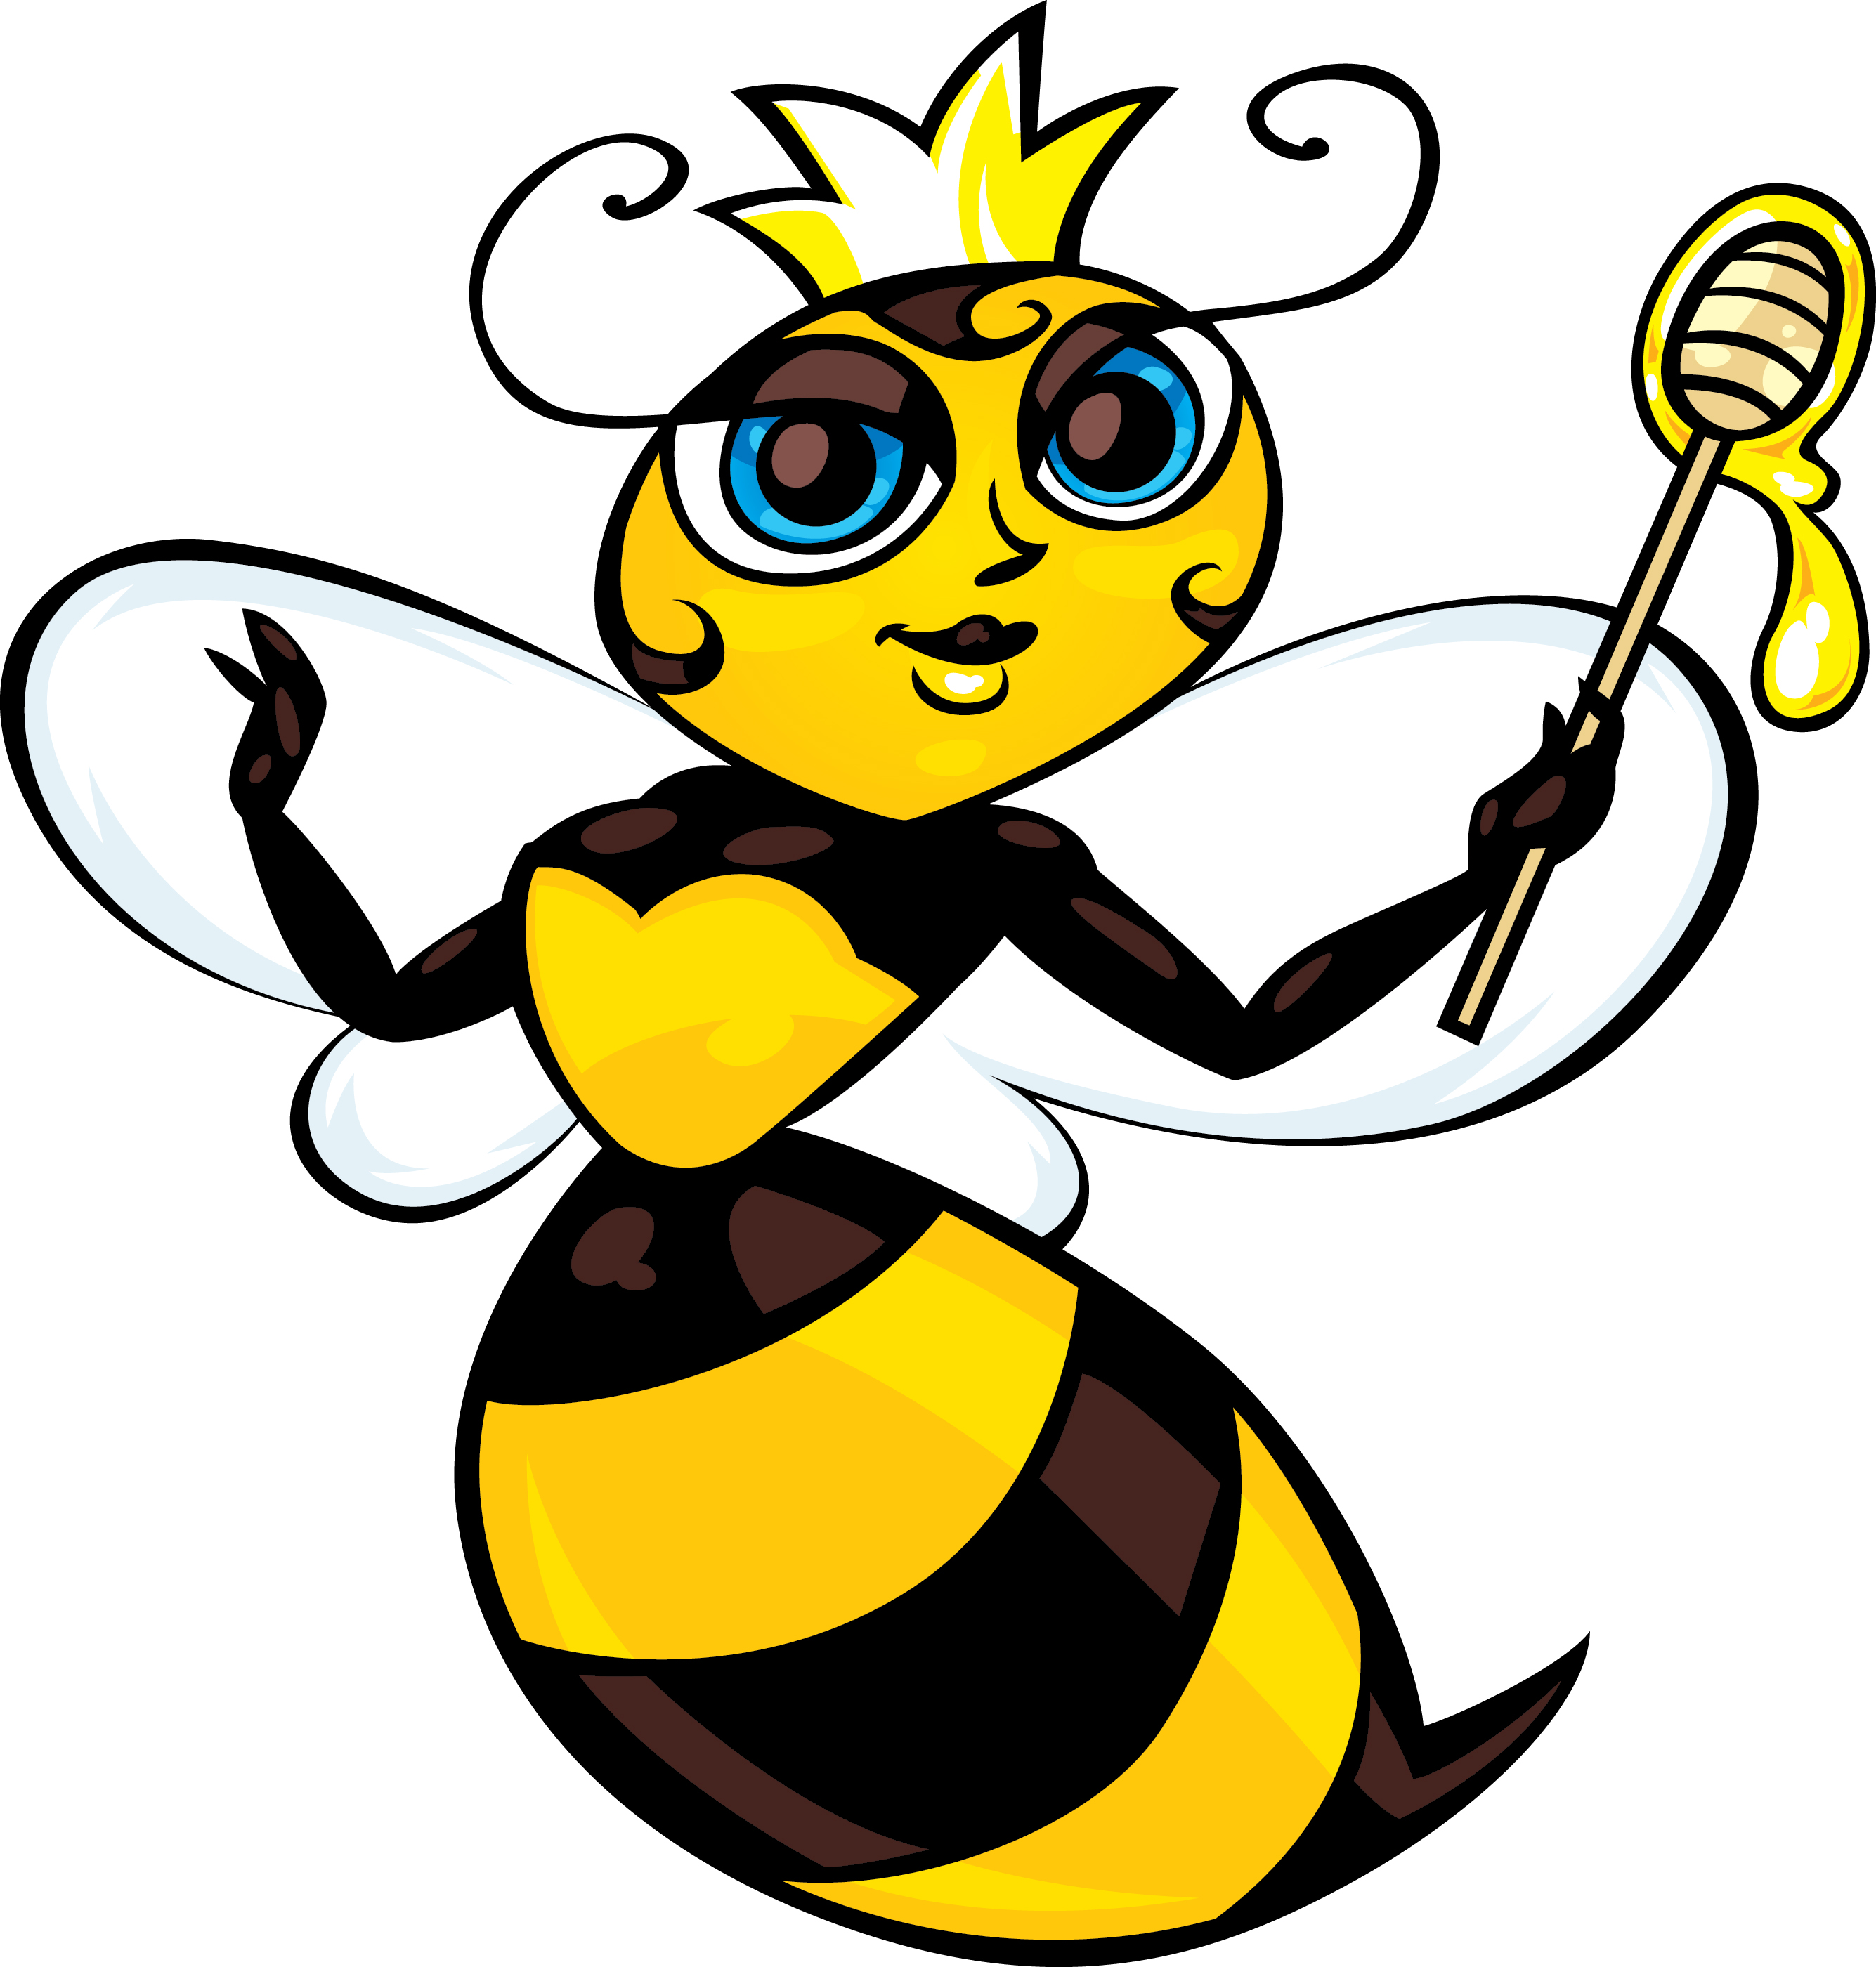 Queen Bee Cartoon - The Cliparts